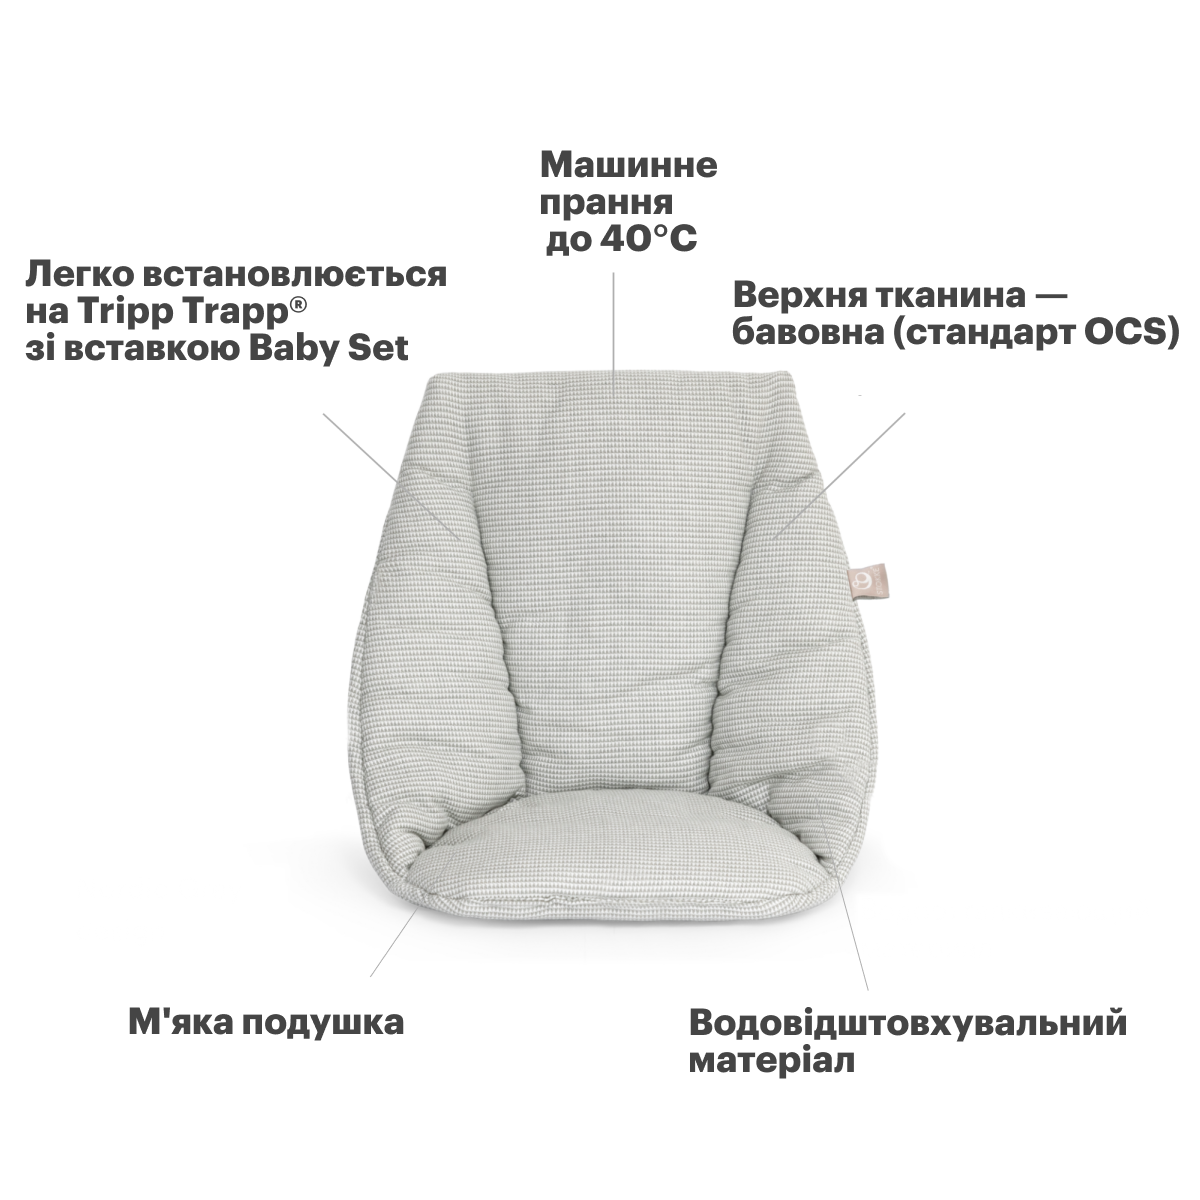 Текстиль Stokke Baby Cushion для стільця Tripp Trapp Nordic grey (496007) - фото 3